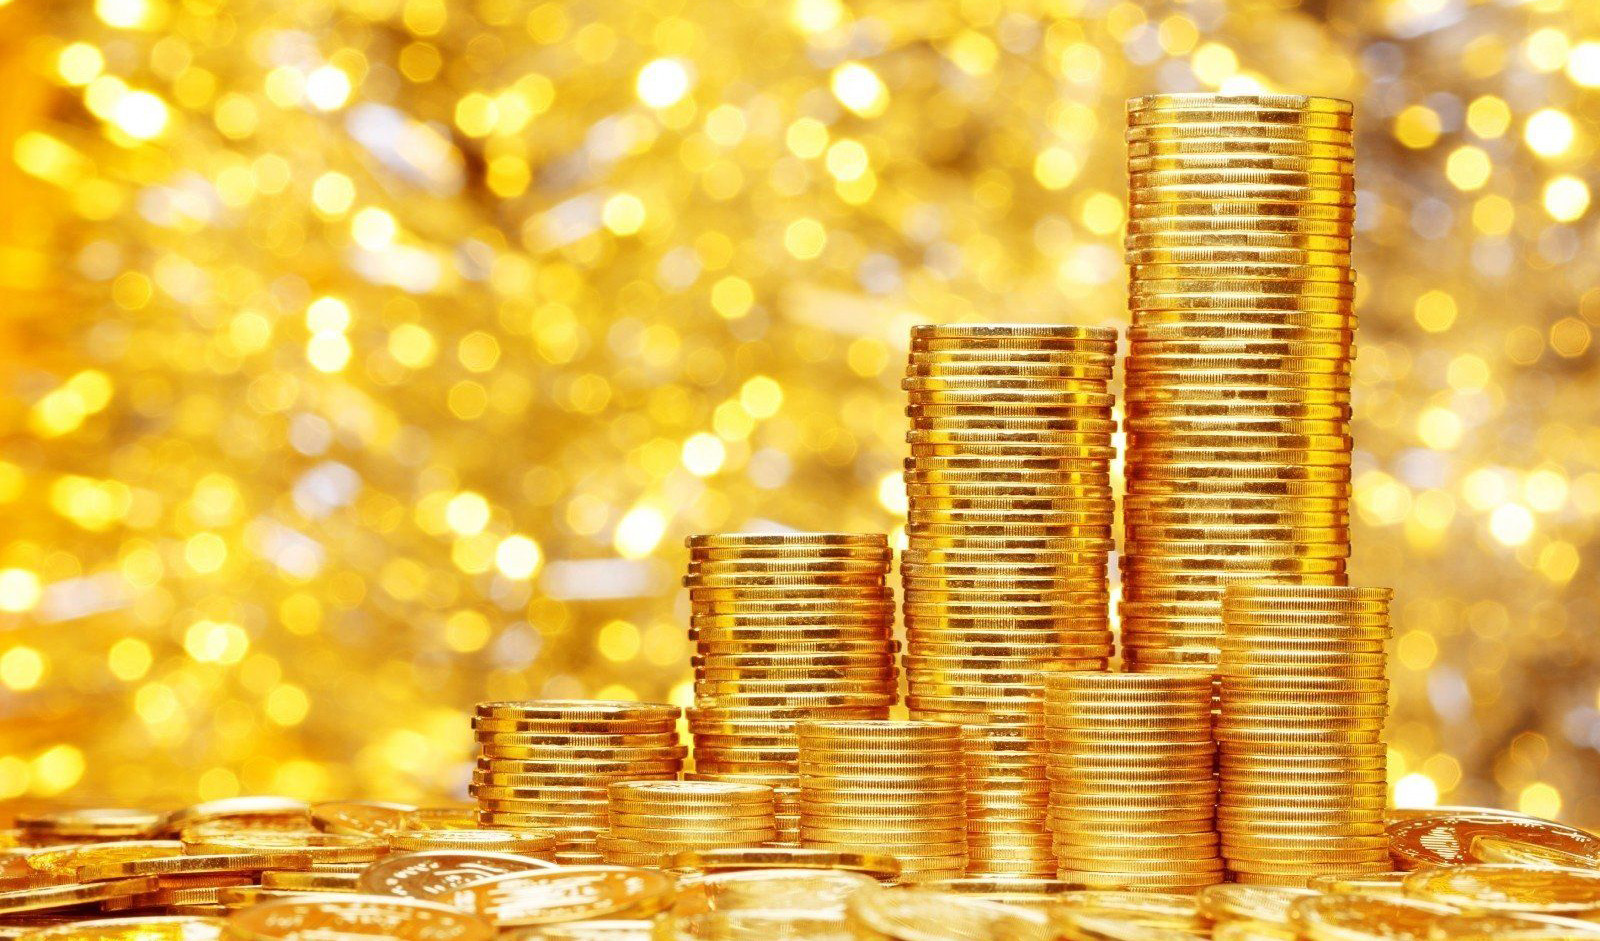 کاهش قیمت سکه و طلا/ برای انجام معاملات صبوری کنید